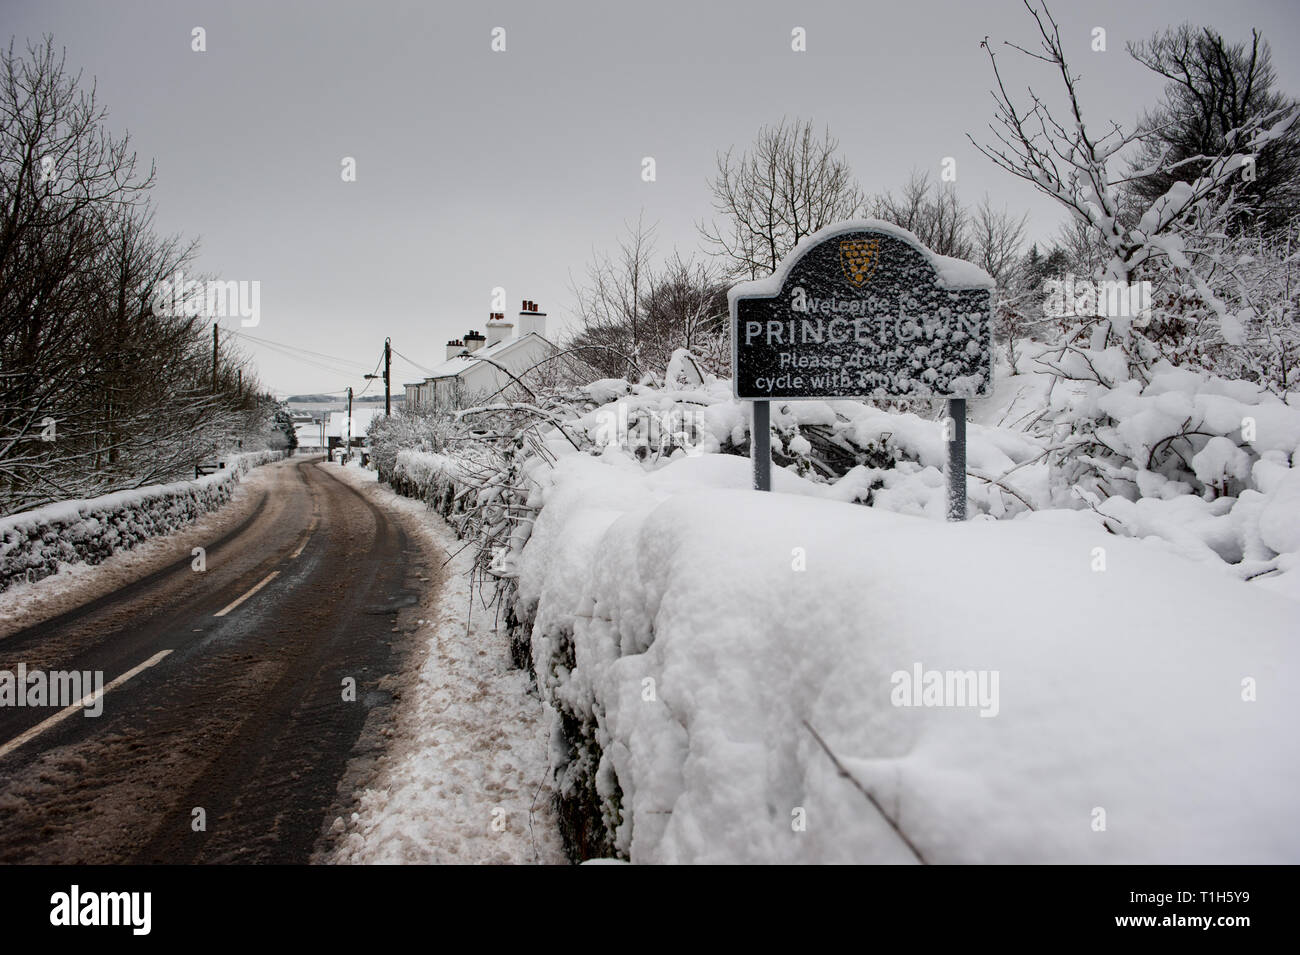 Aldea Princetown firmar cubierto de nieve al lado de lodo cubiertas de carretera Foto de stock